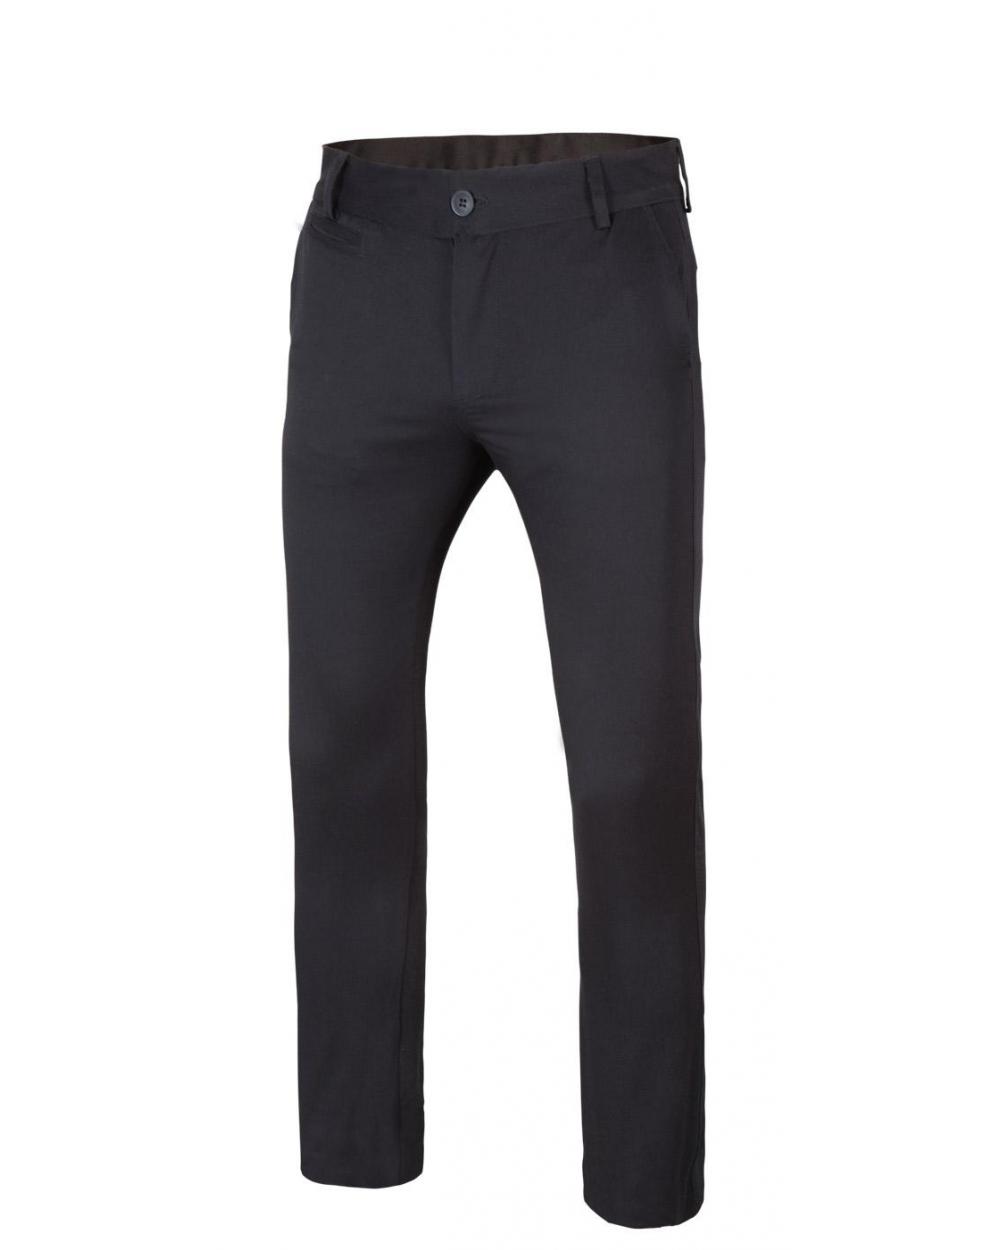 Comprar Pantalón chino stretch hombre serie 403002s online barato Negro